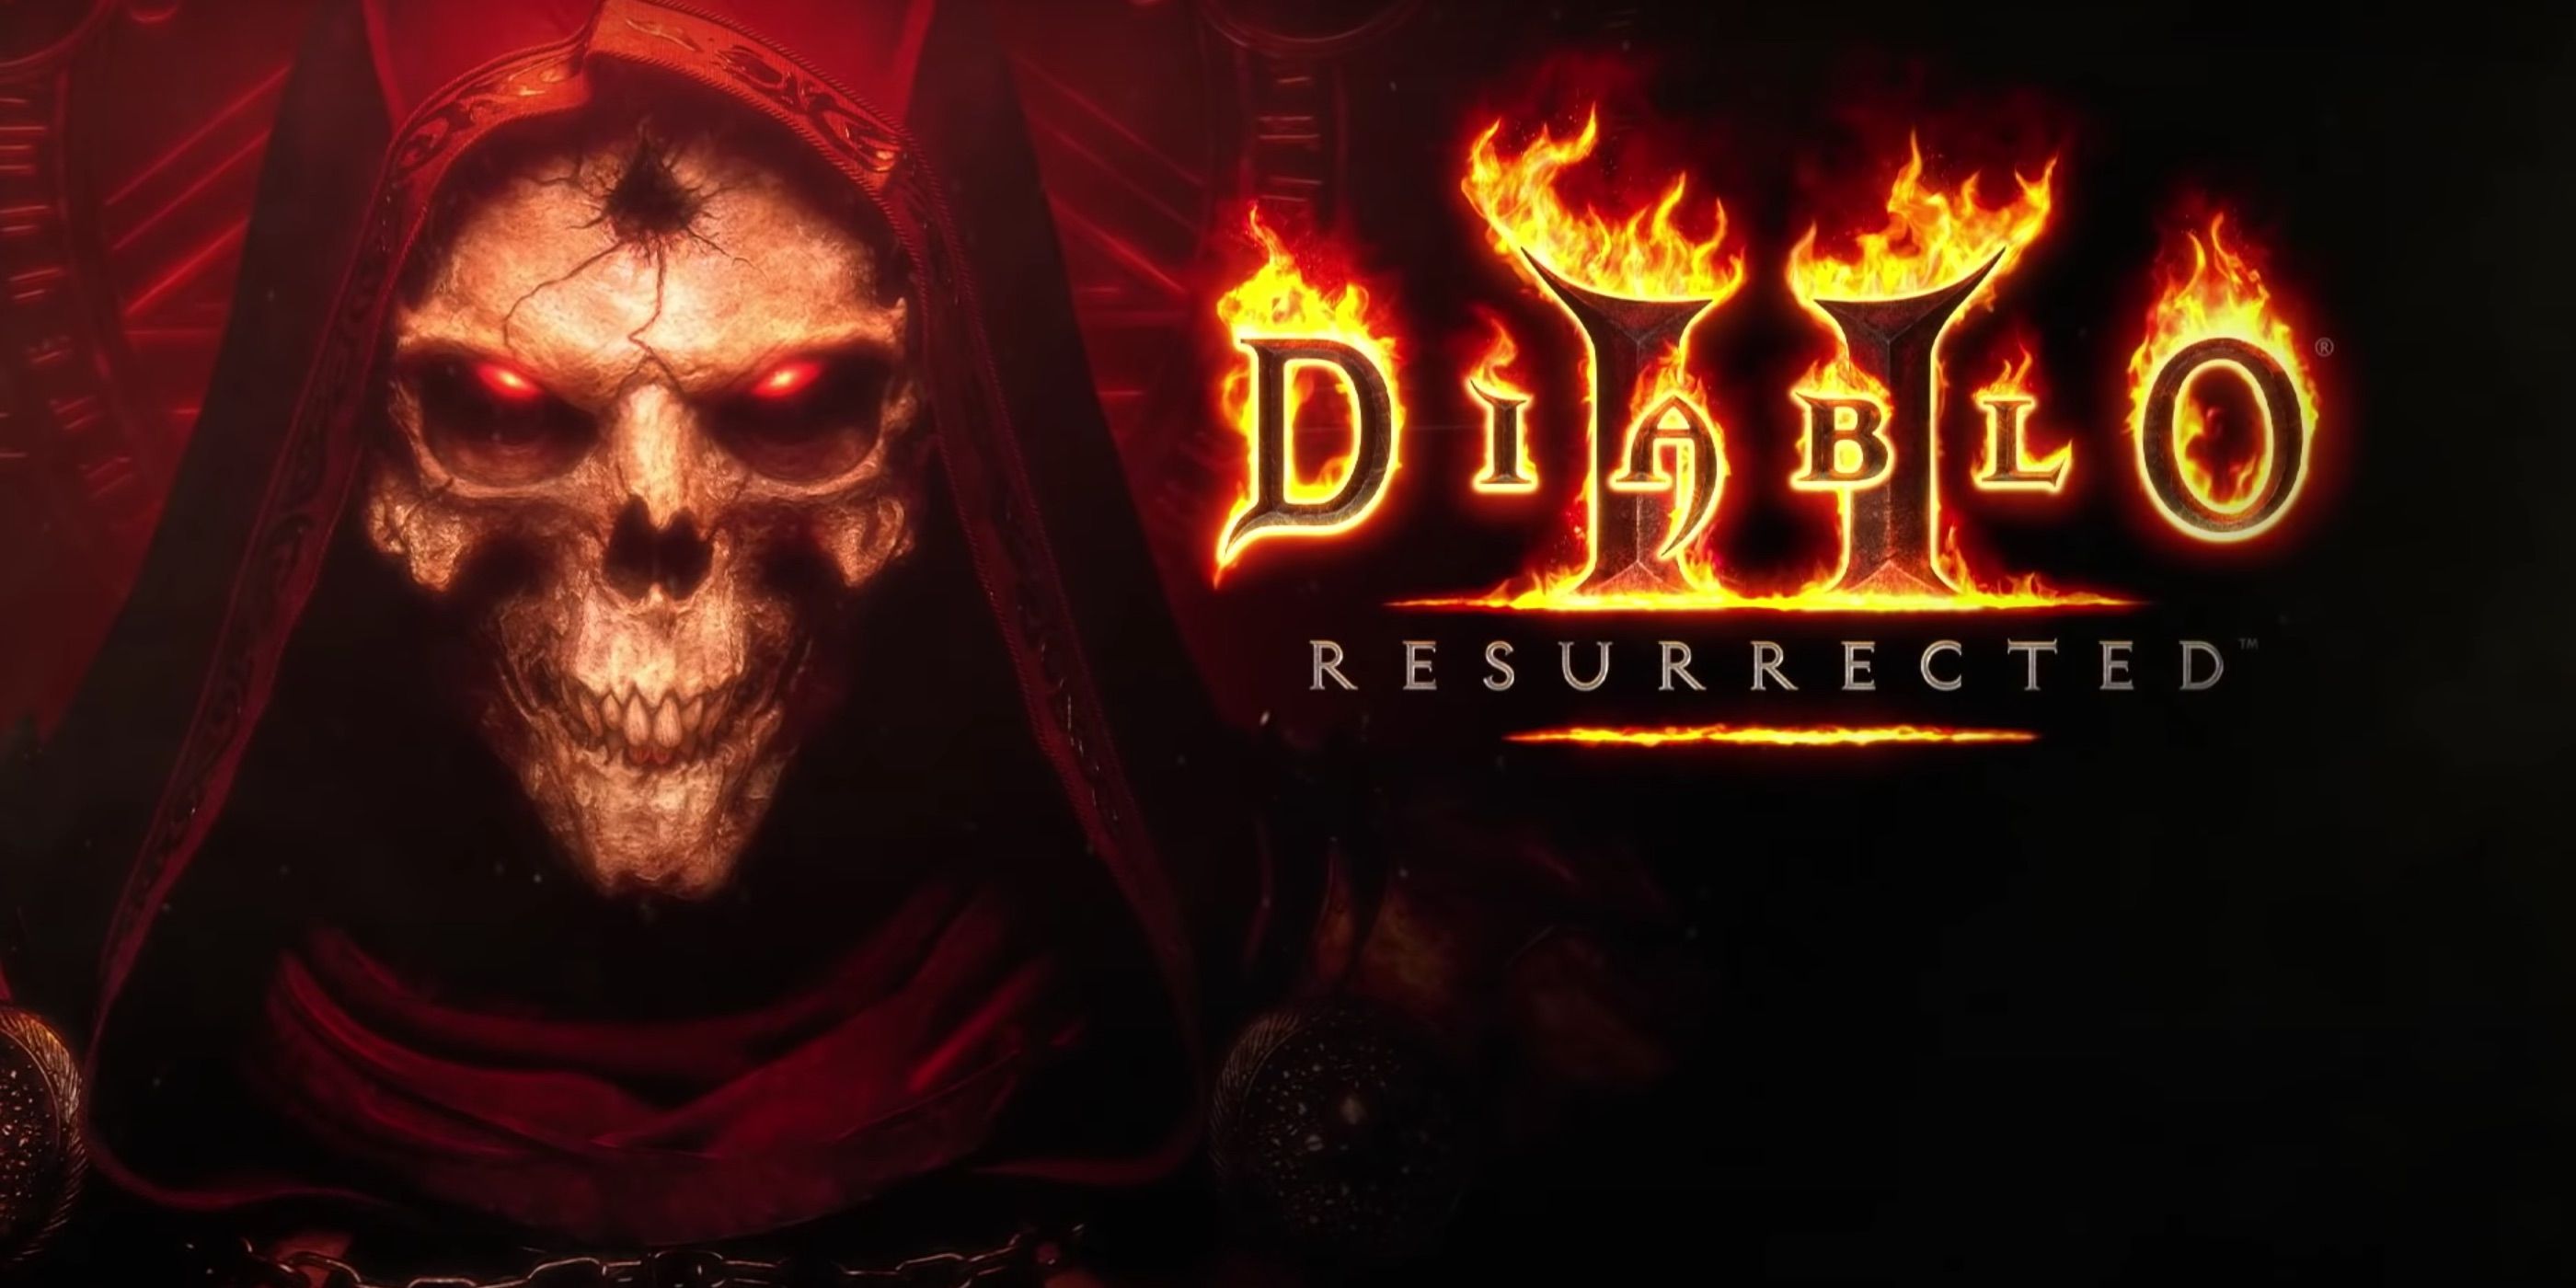 diablo 2 resurrected beta opt in